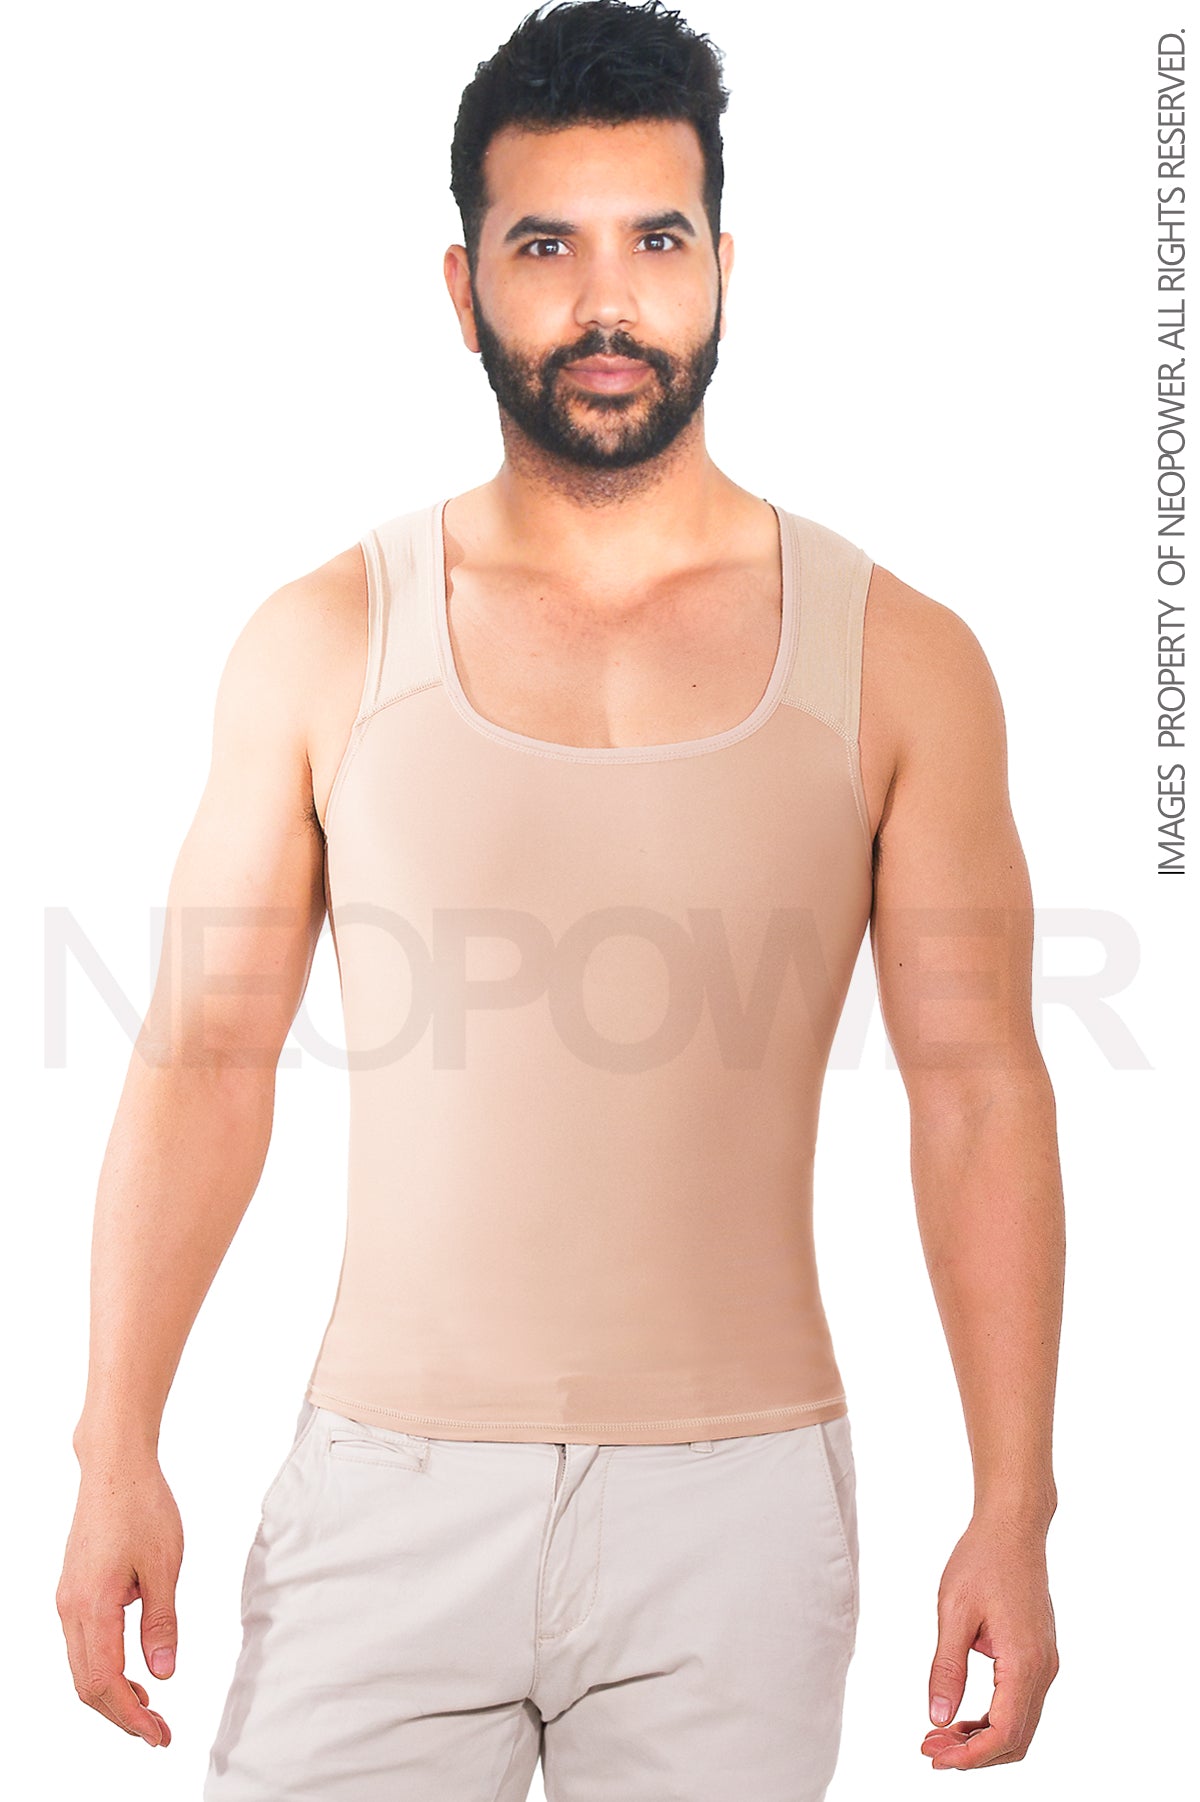 KUMAYES Camisa de compresión Hombre Camiseta Reductora Invisible